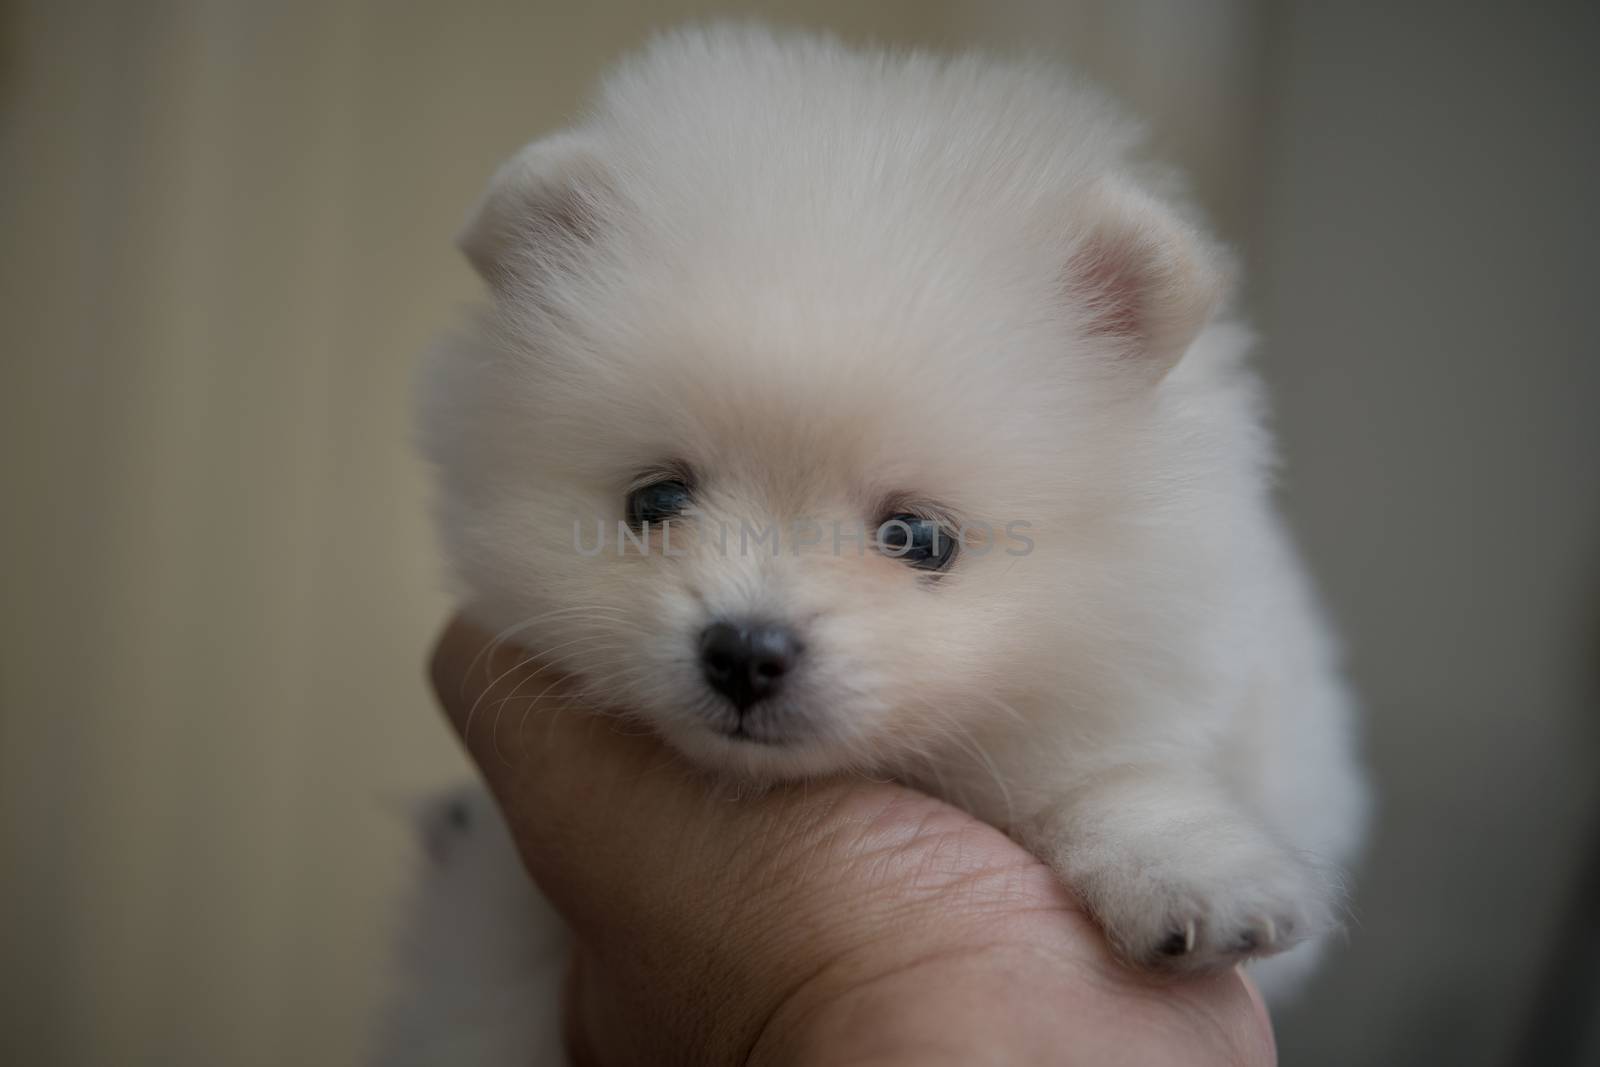 Pomeranian baby dog on my hand by antpkr